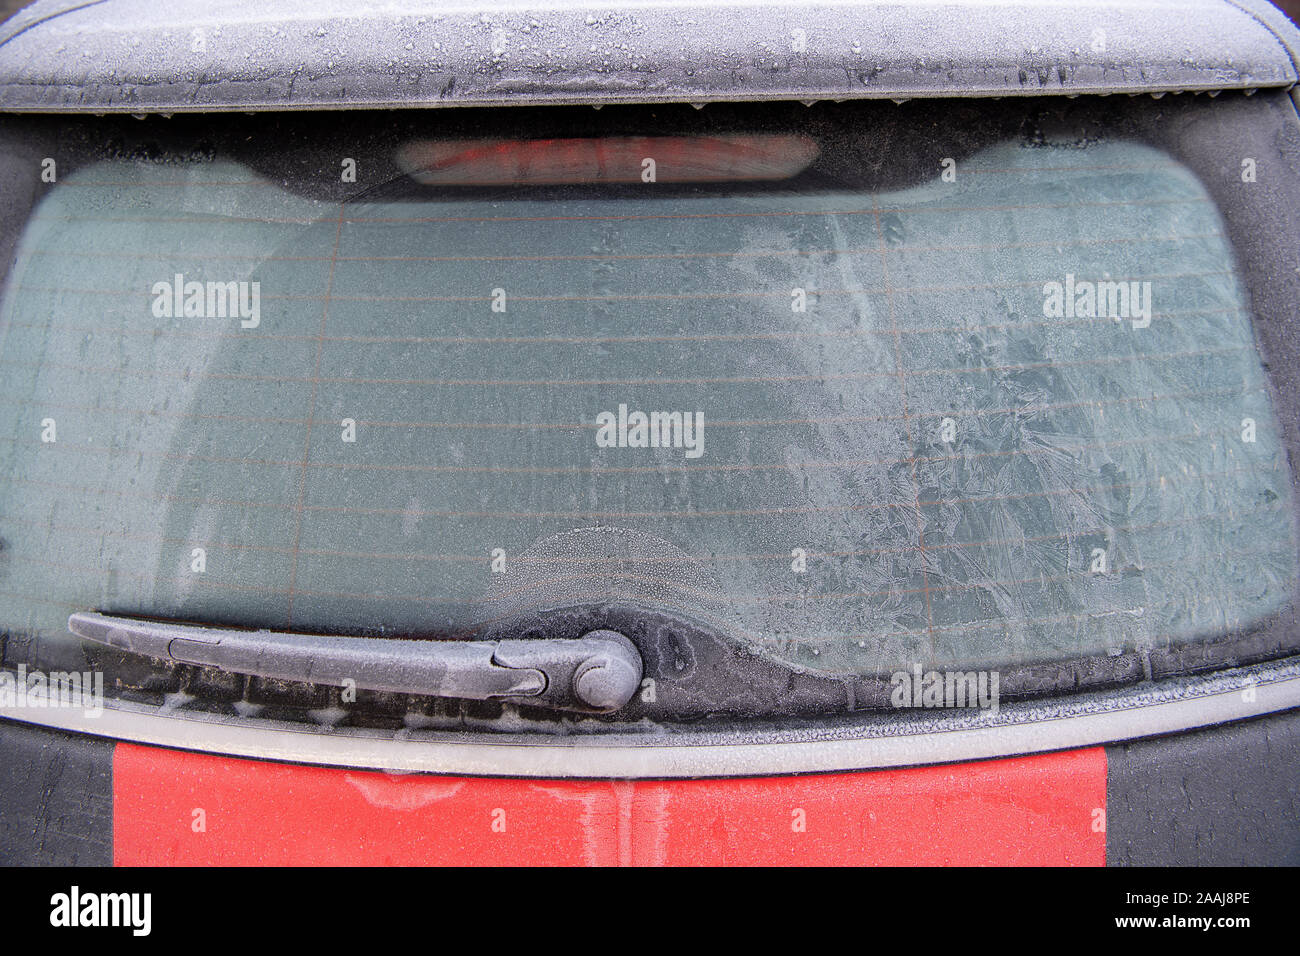 Frost am Auto Heckscheibe, die Sicht einschränkt. North Yorkshire, UK  Stockfotografie - Alamy